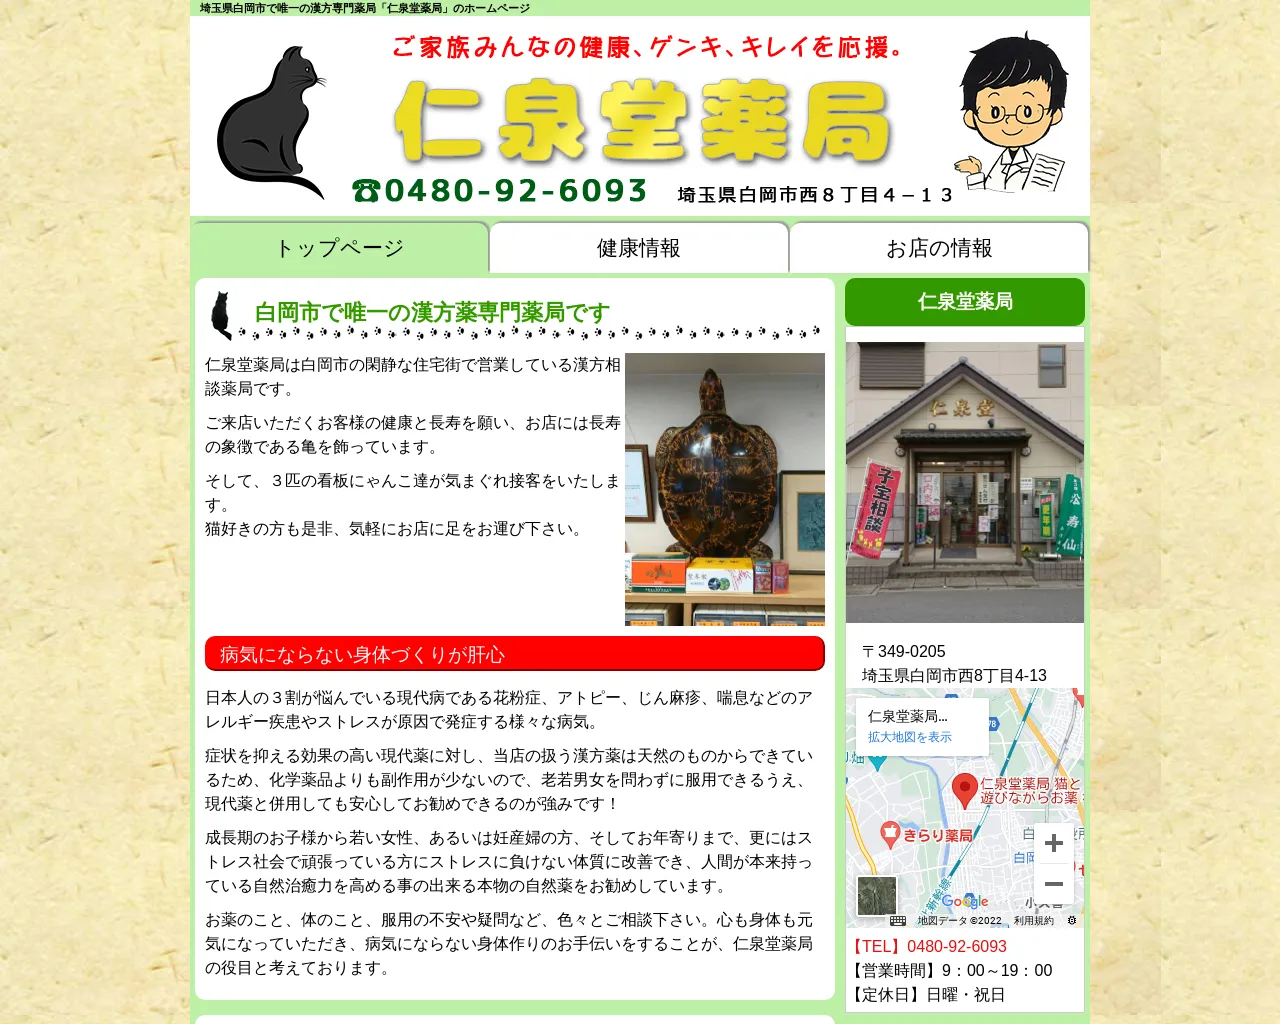 仁泉堂薬局 猫と遊びながらお薬相談のできるお店 site